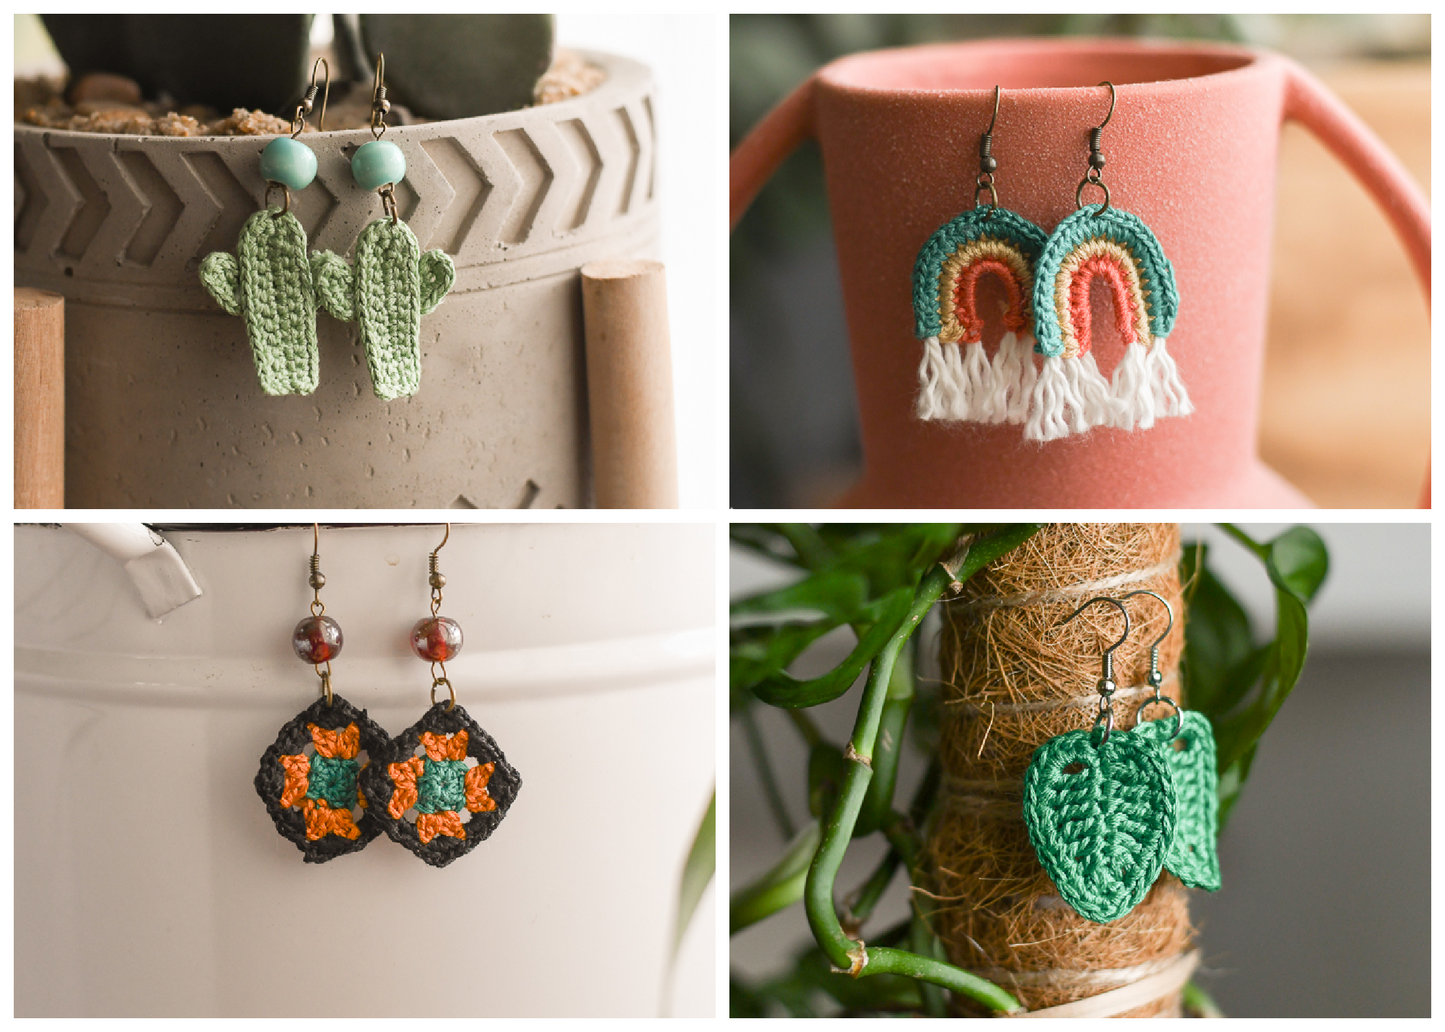 Embroidery Floss Earrings [crochet pattern]